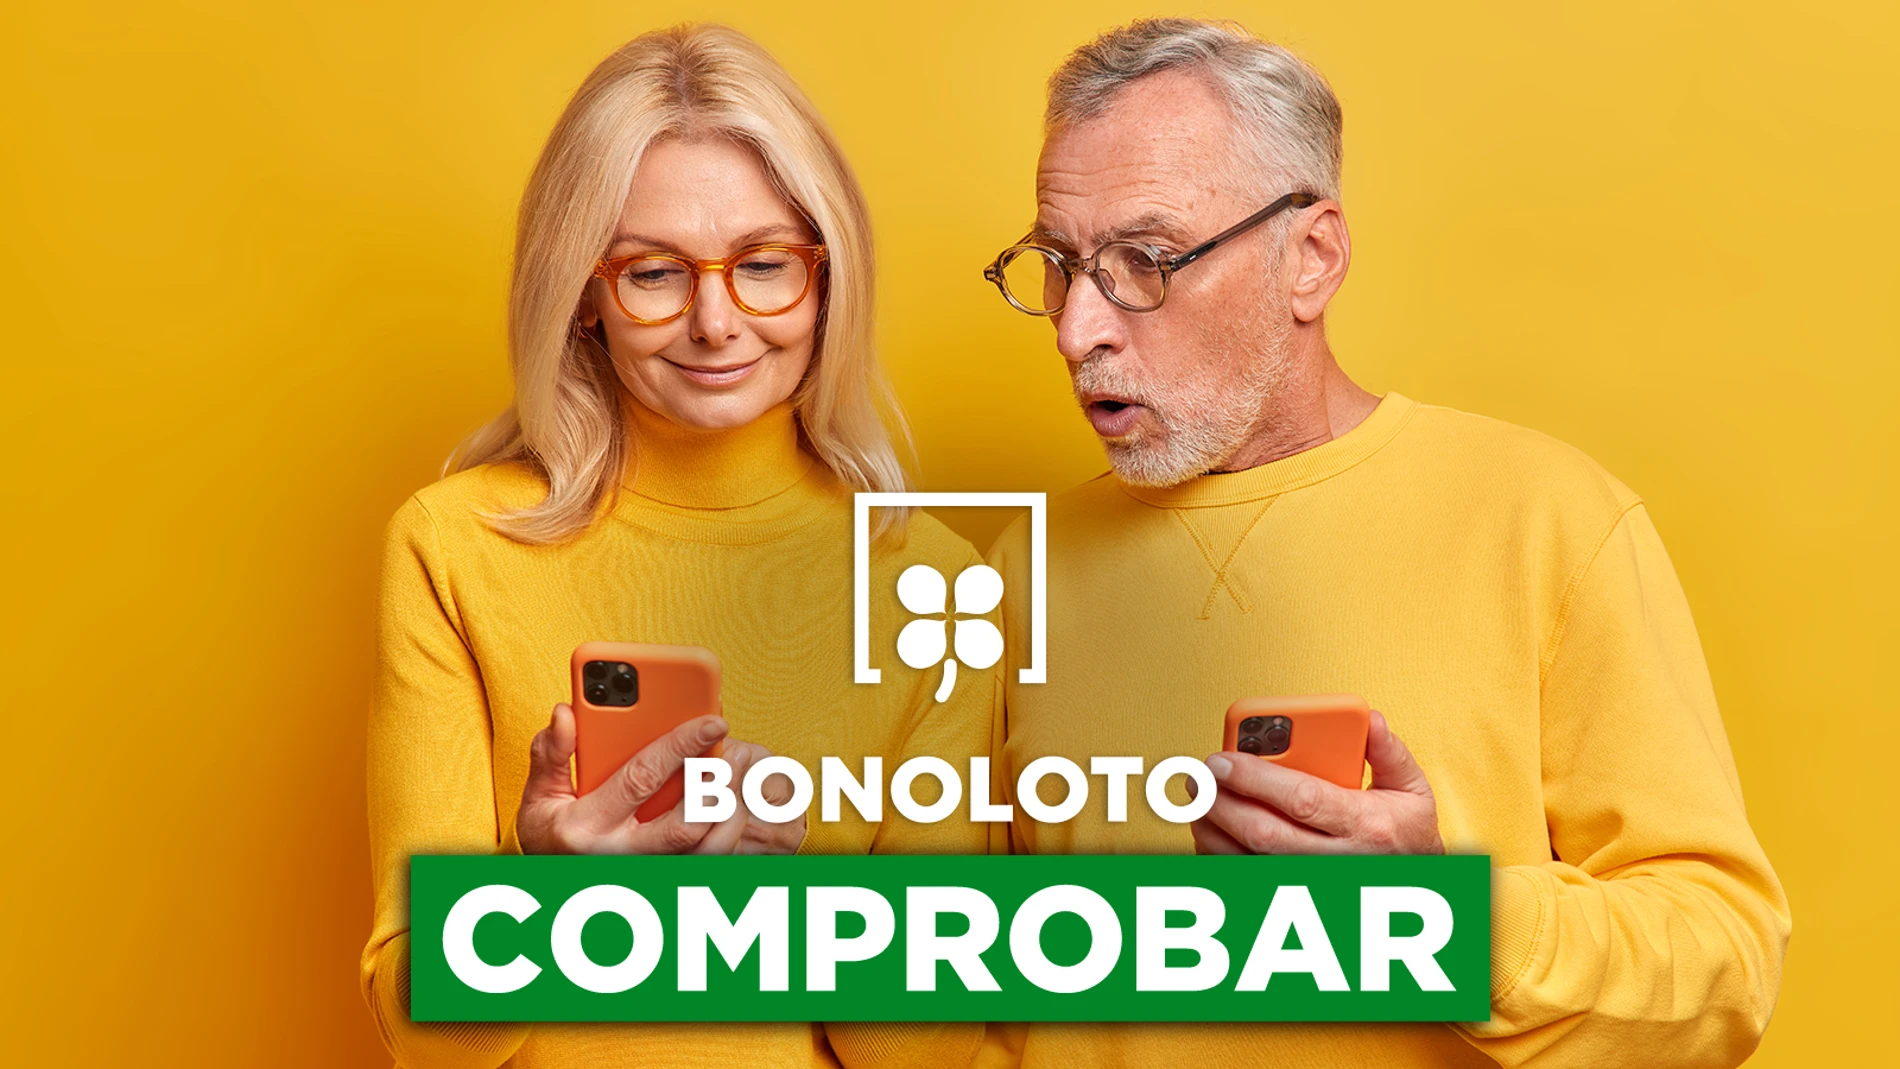 Bonoloto: comprobar hoy, viernes 23 de diciembre de 2022